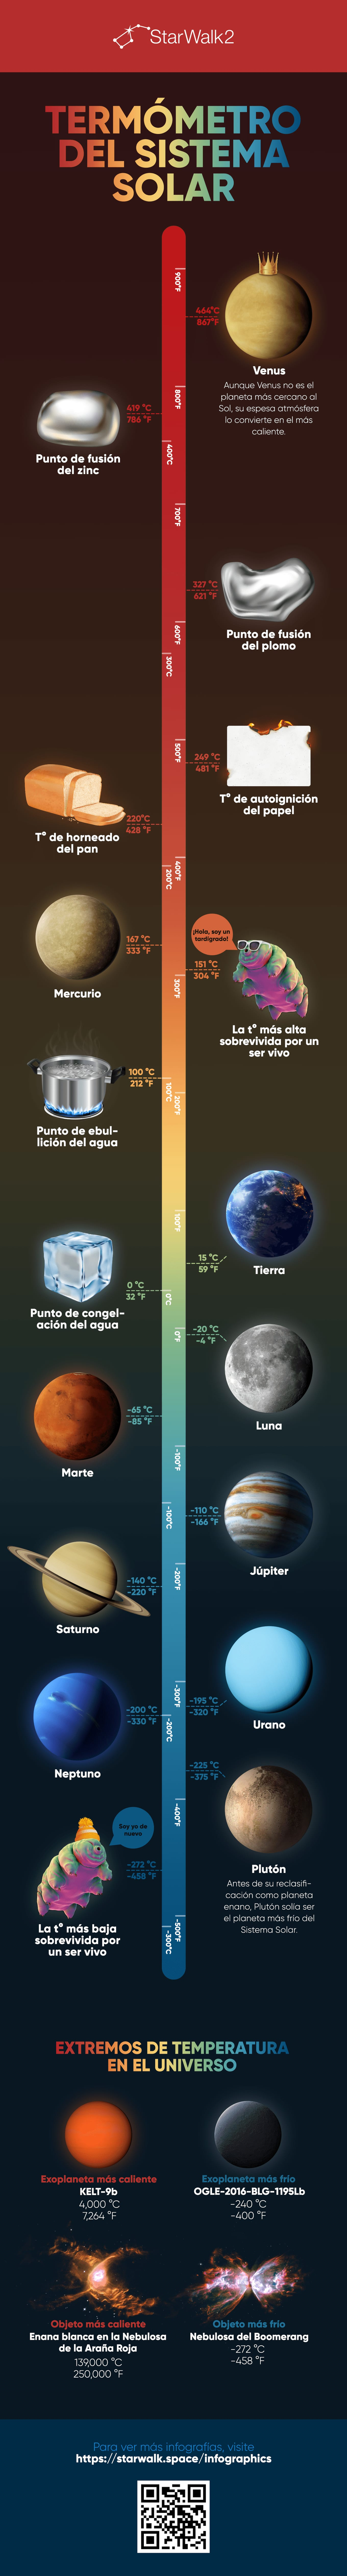 Planet temperatures infographic